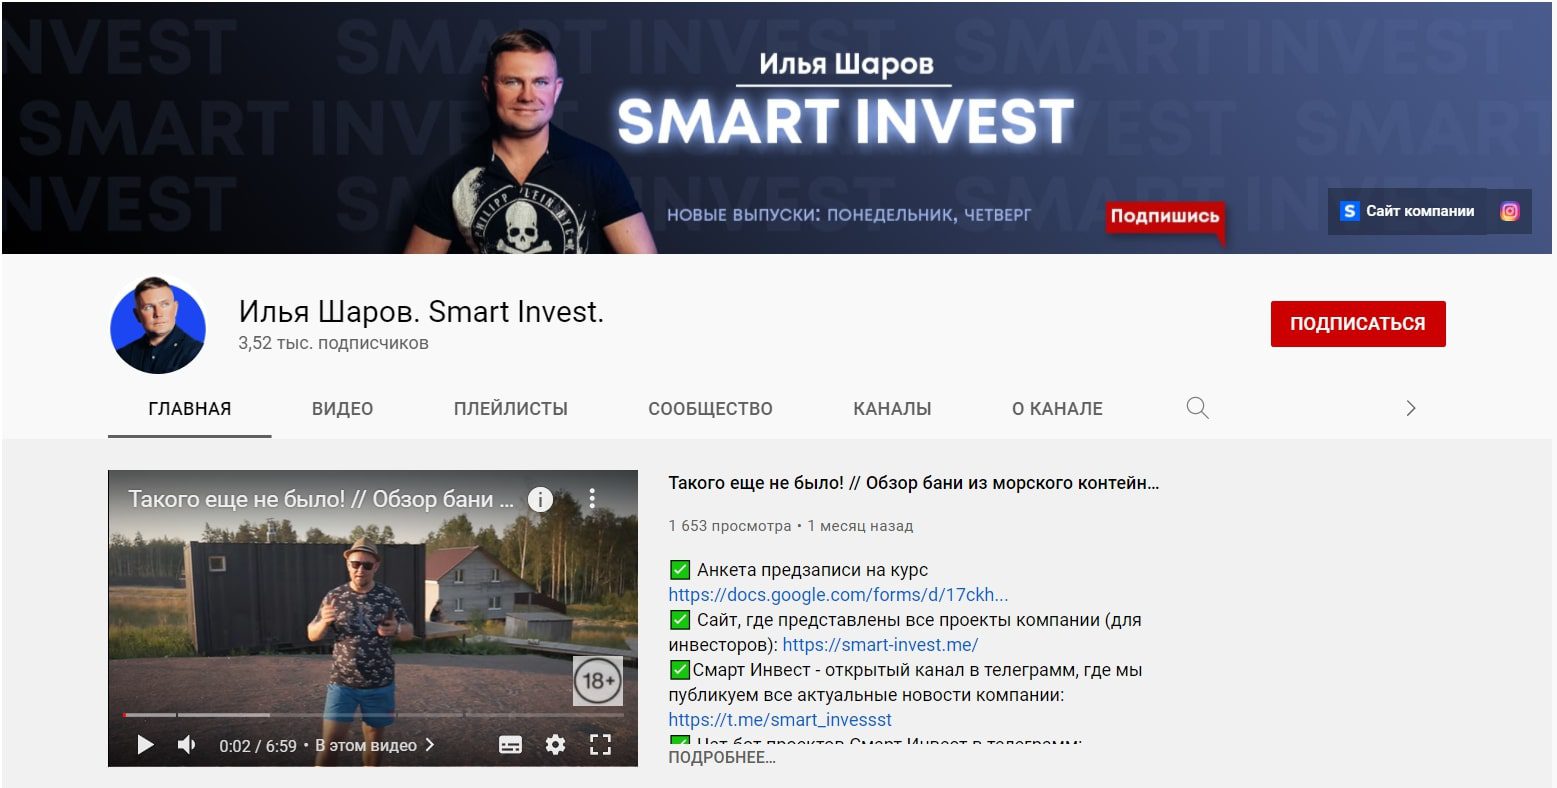 Ютуб канал Smart Invest